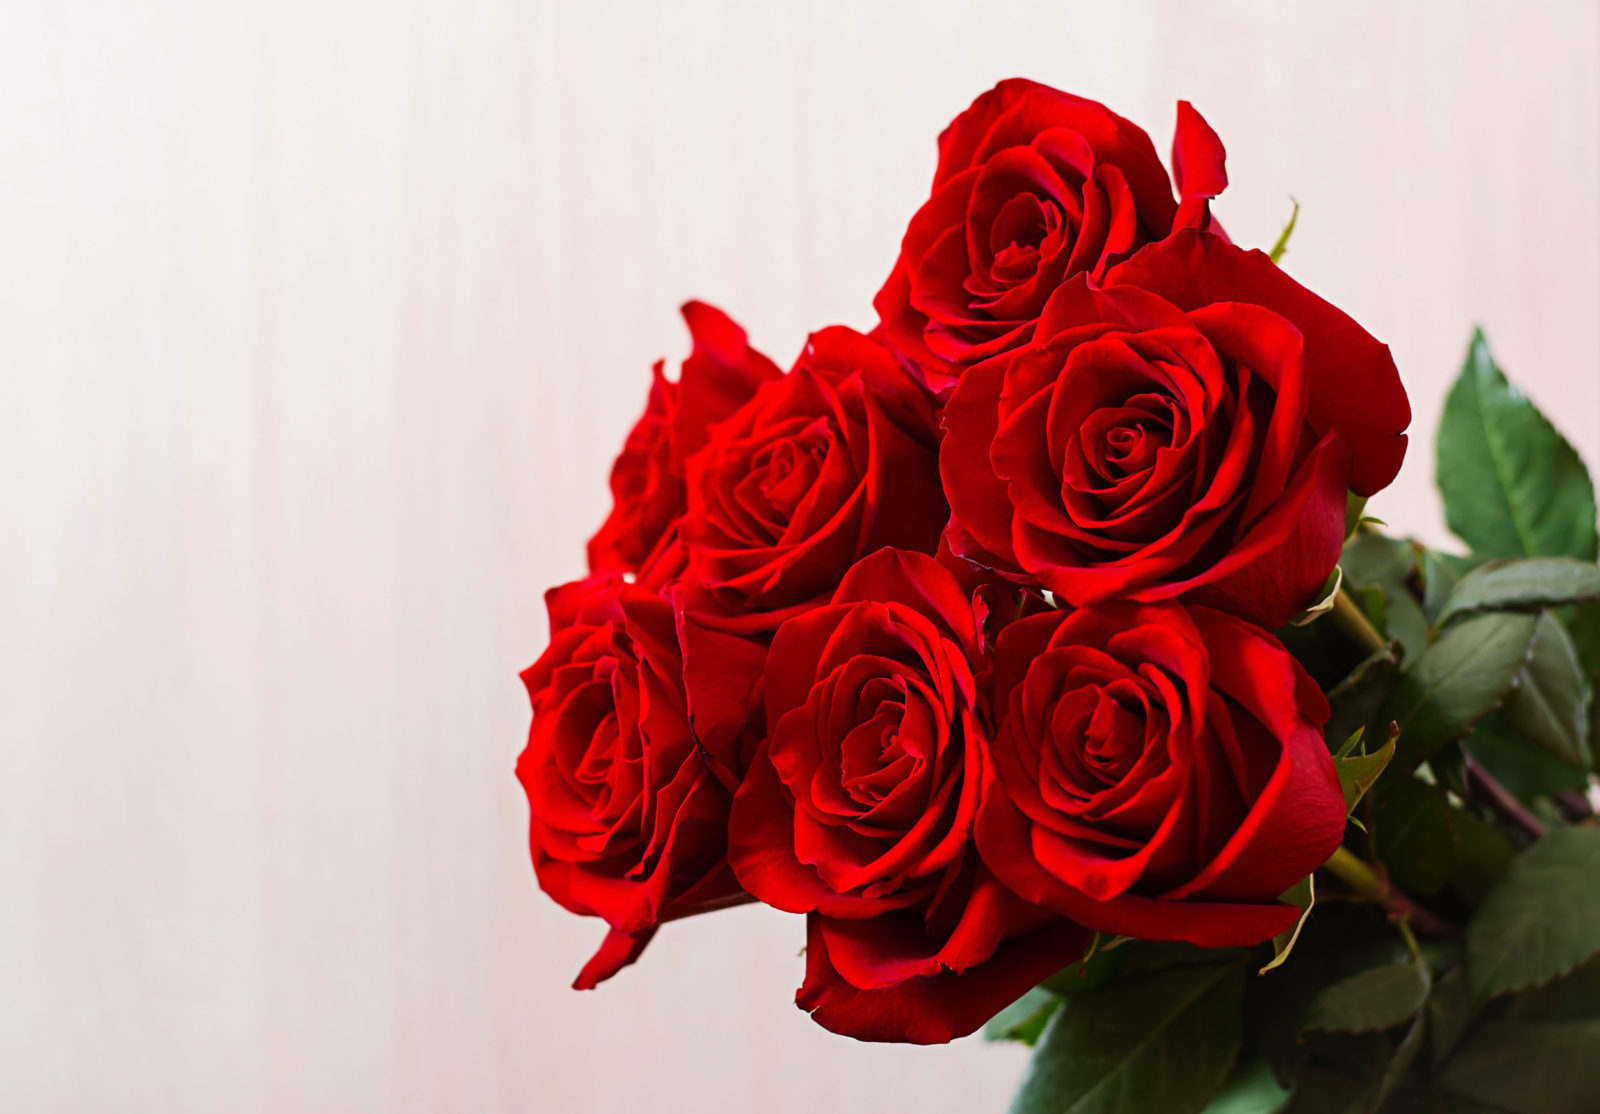 Rosas, una opción clásica para regalar el día de la madre.